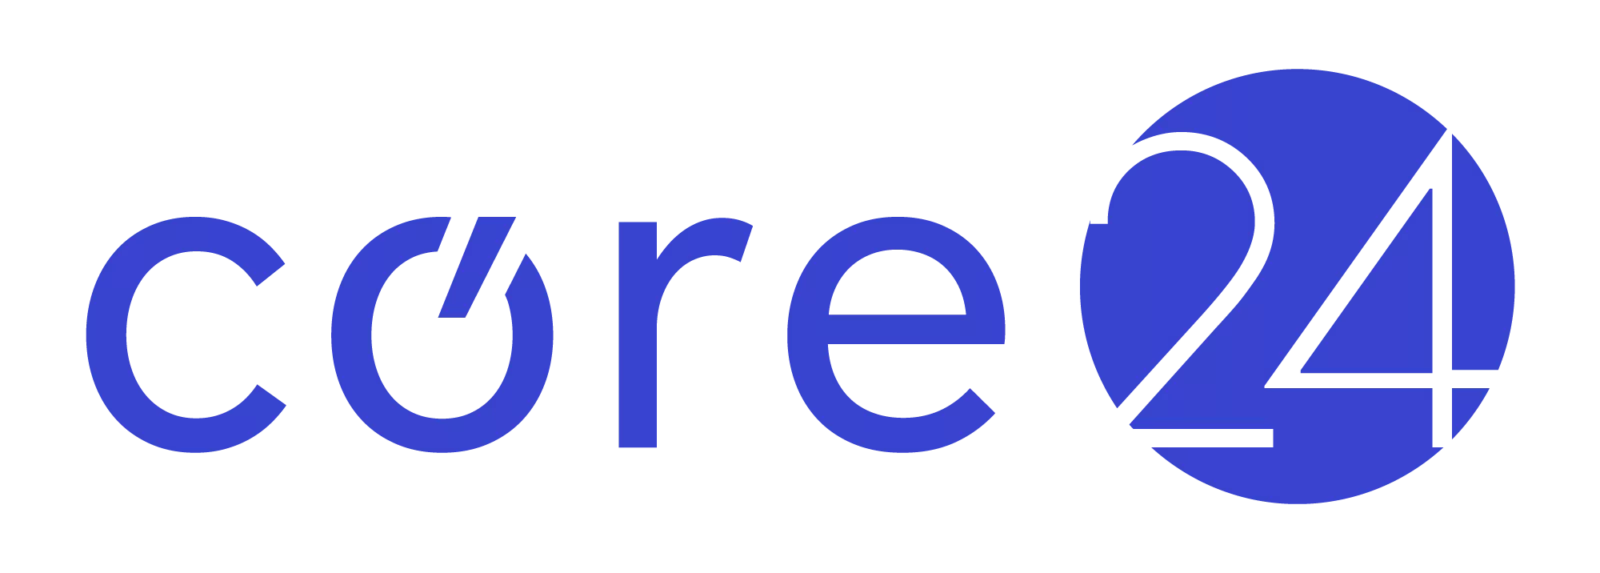 03 core24 logo ib web